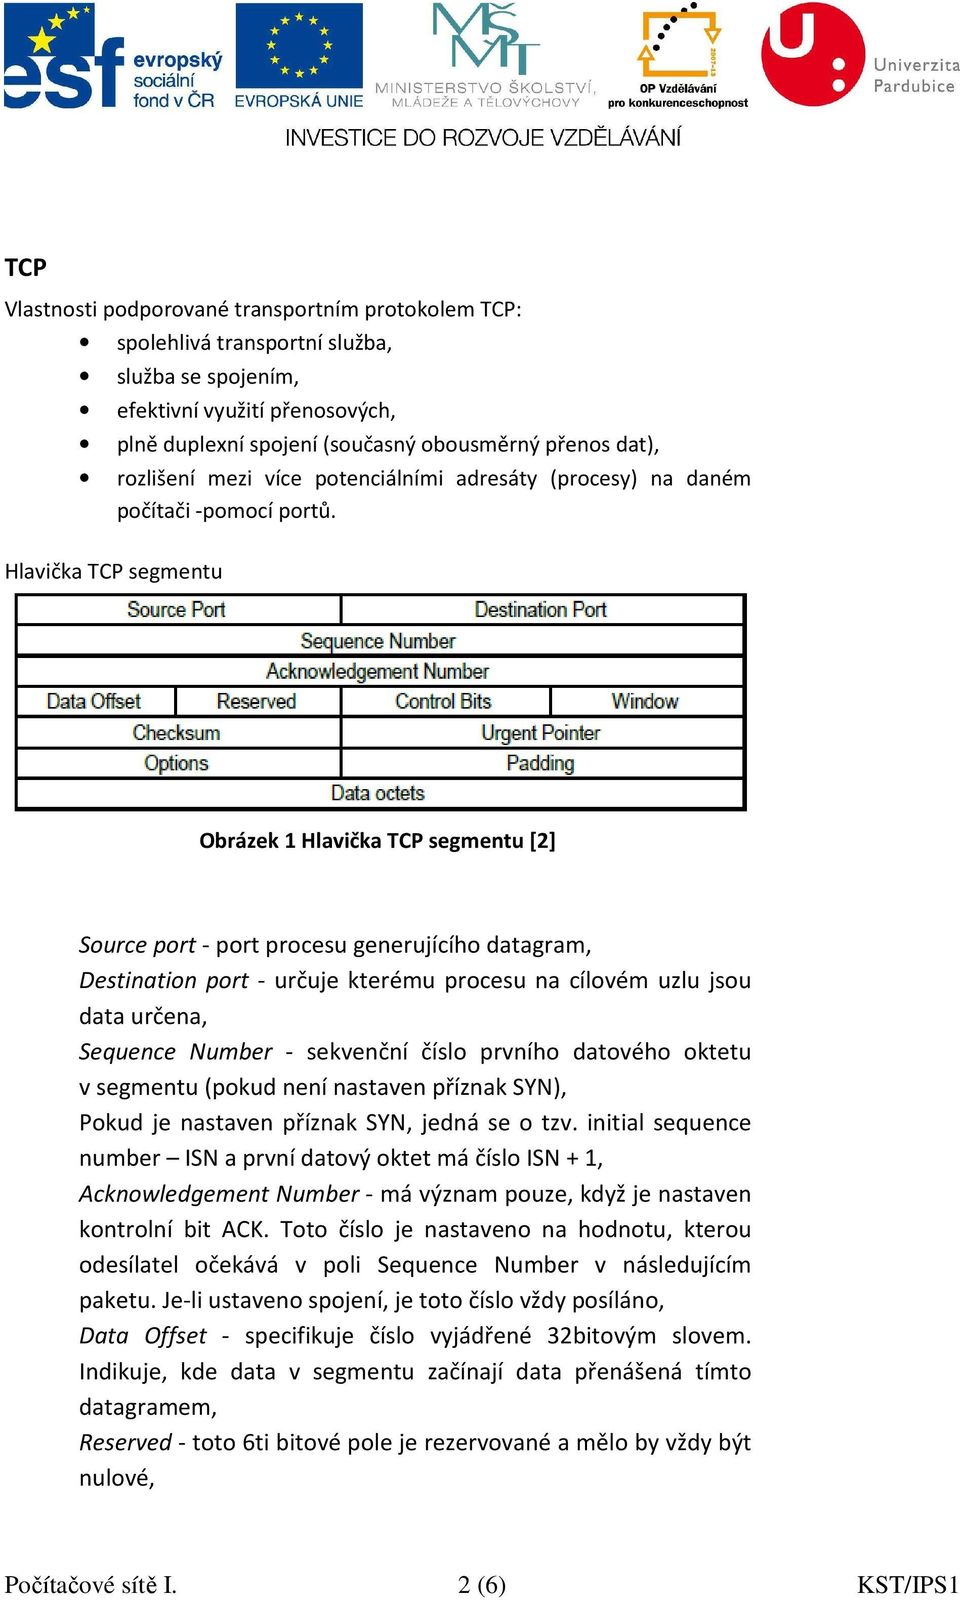 Hlavička TCP segmentu Obrázek 1 Hlavička TCP segmentu [2] Source port - port procesu generujícího datagram, Destination port - určuje kterému procesu na cílovém uzlu jsou data určena, Sequence Number